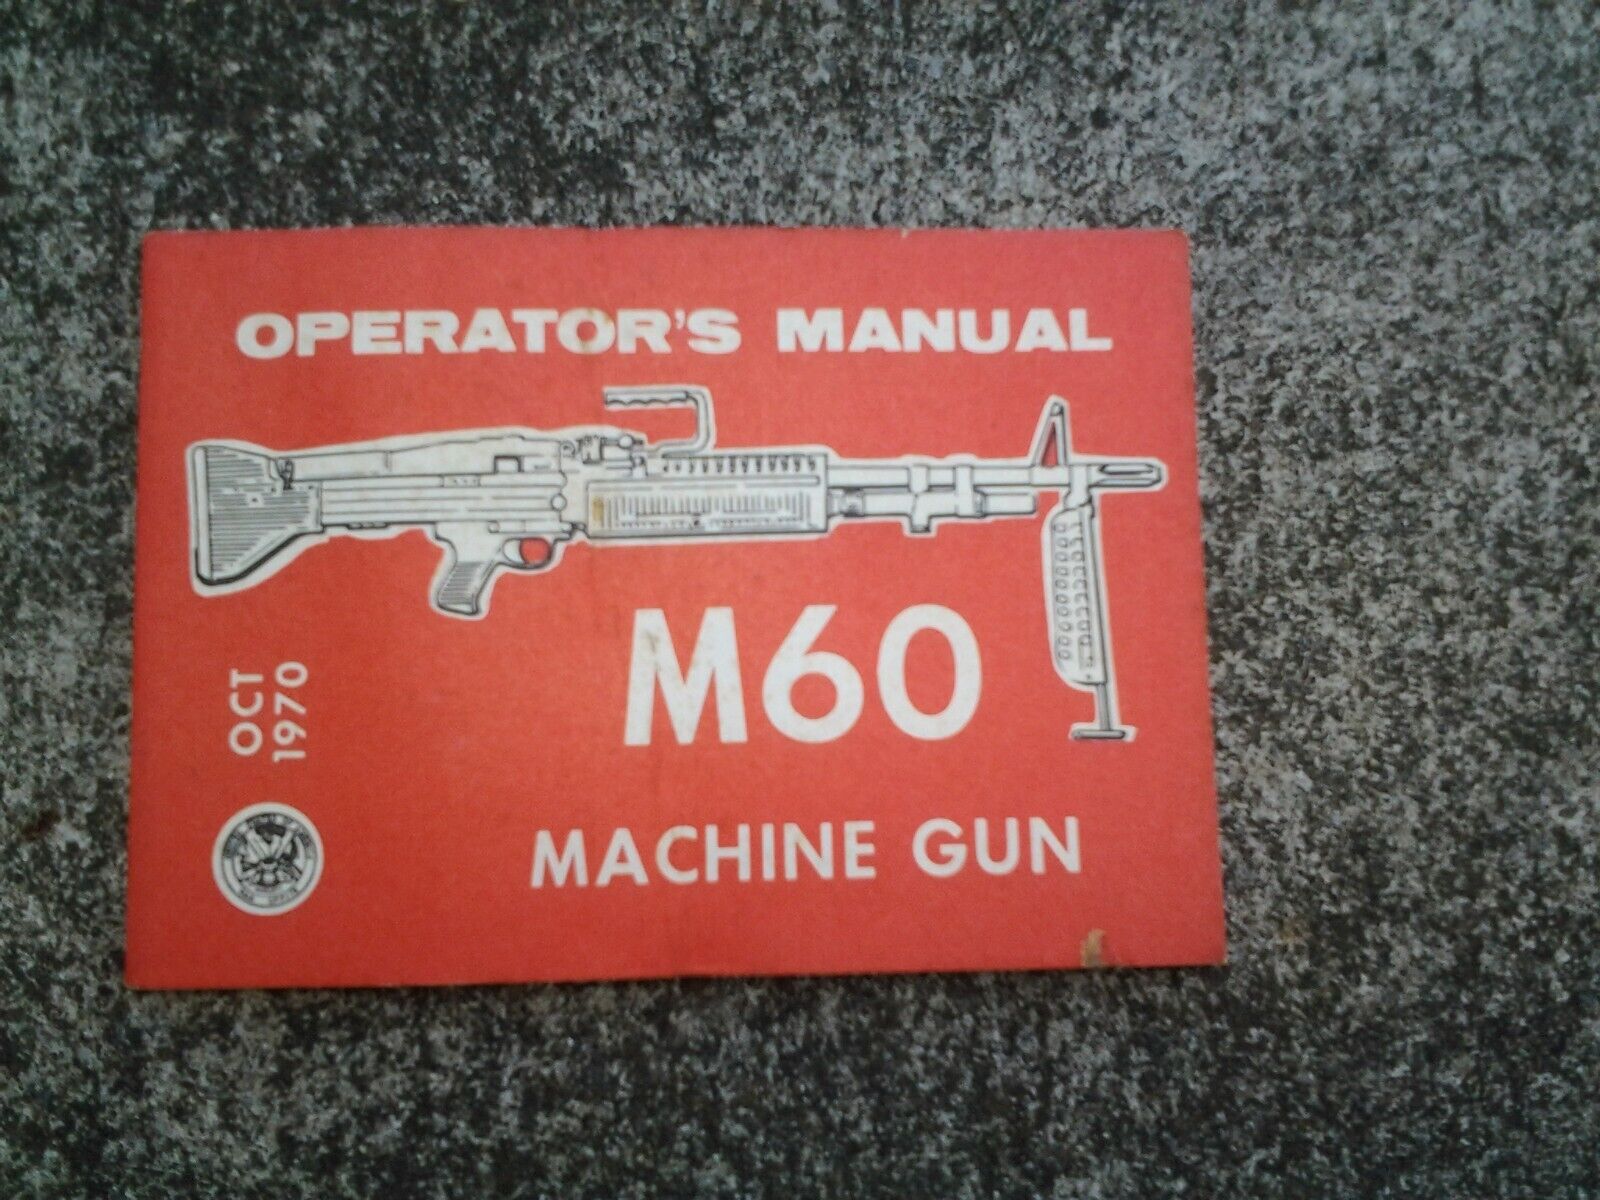 M60 Machine Gun Operators Manual Oct 1970 (1978 reprint) TM 9-1005-224-10